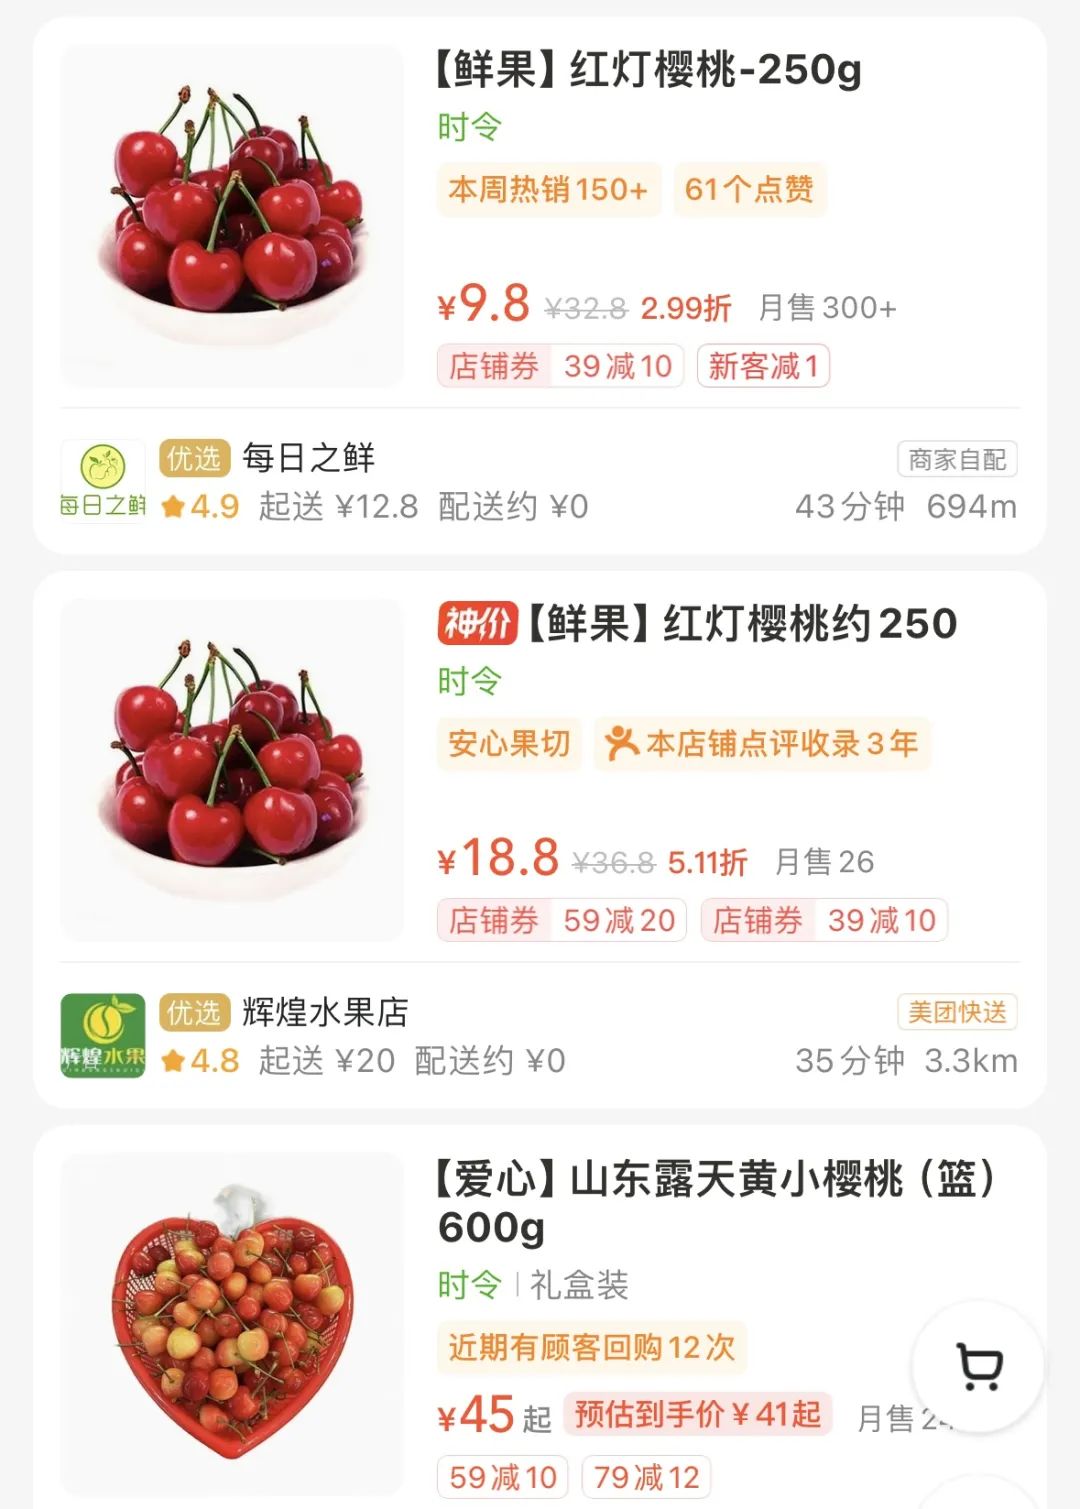 位于余杭的勾庄水果批发市场是杭州最大的水果交易市场